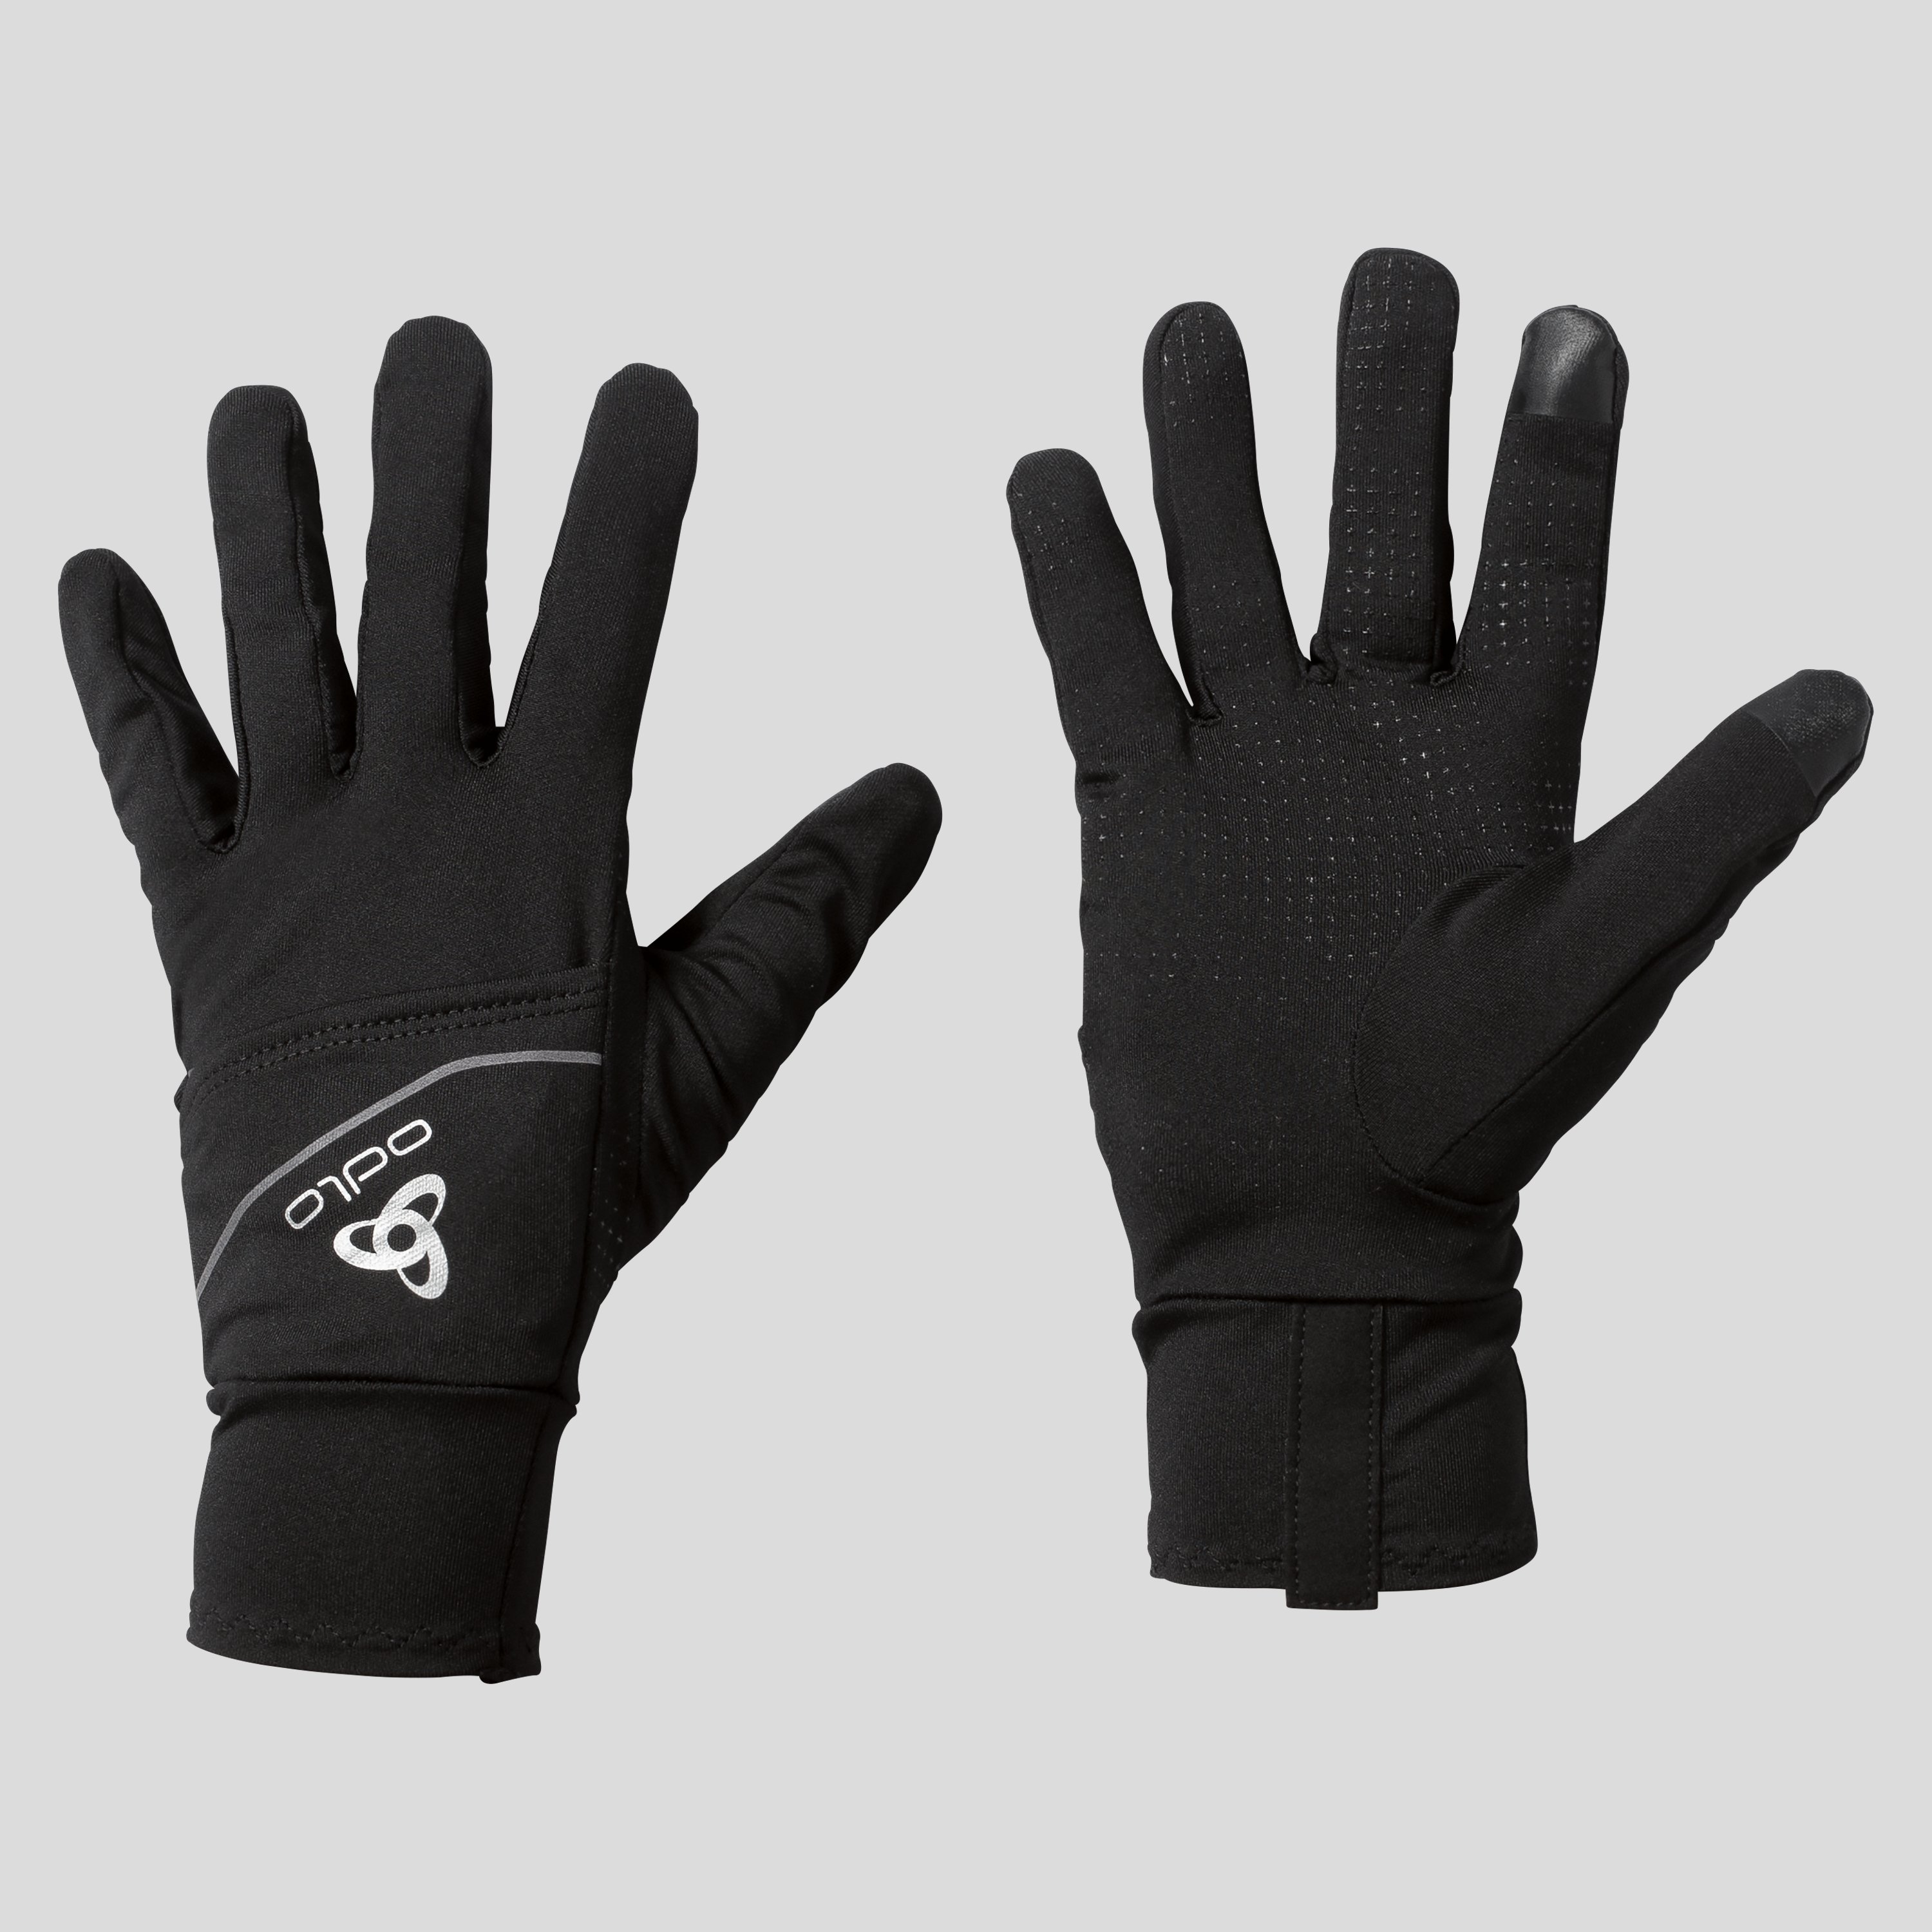 ODLO Intensity Cover Safety Light Handschuhe, XXS, schwarz